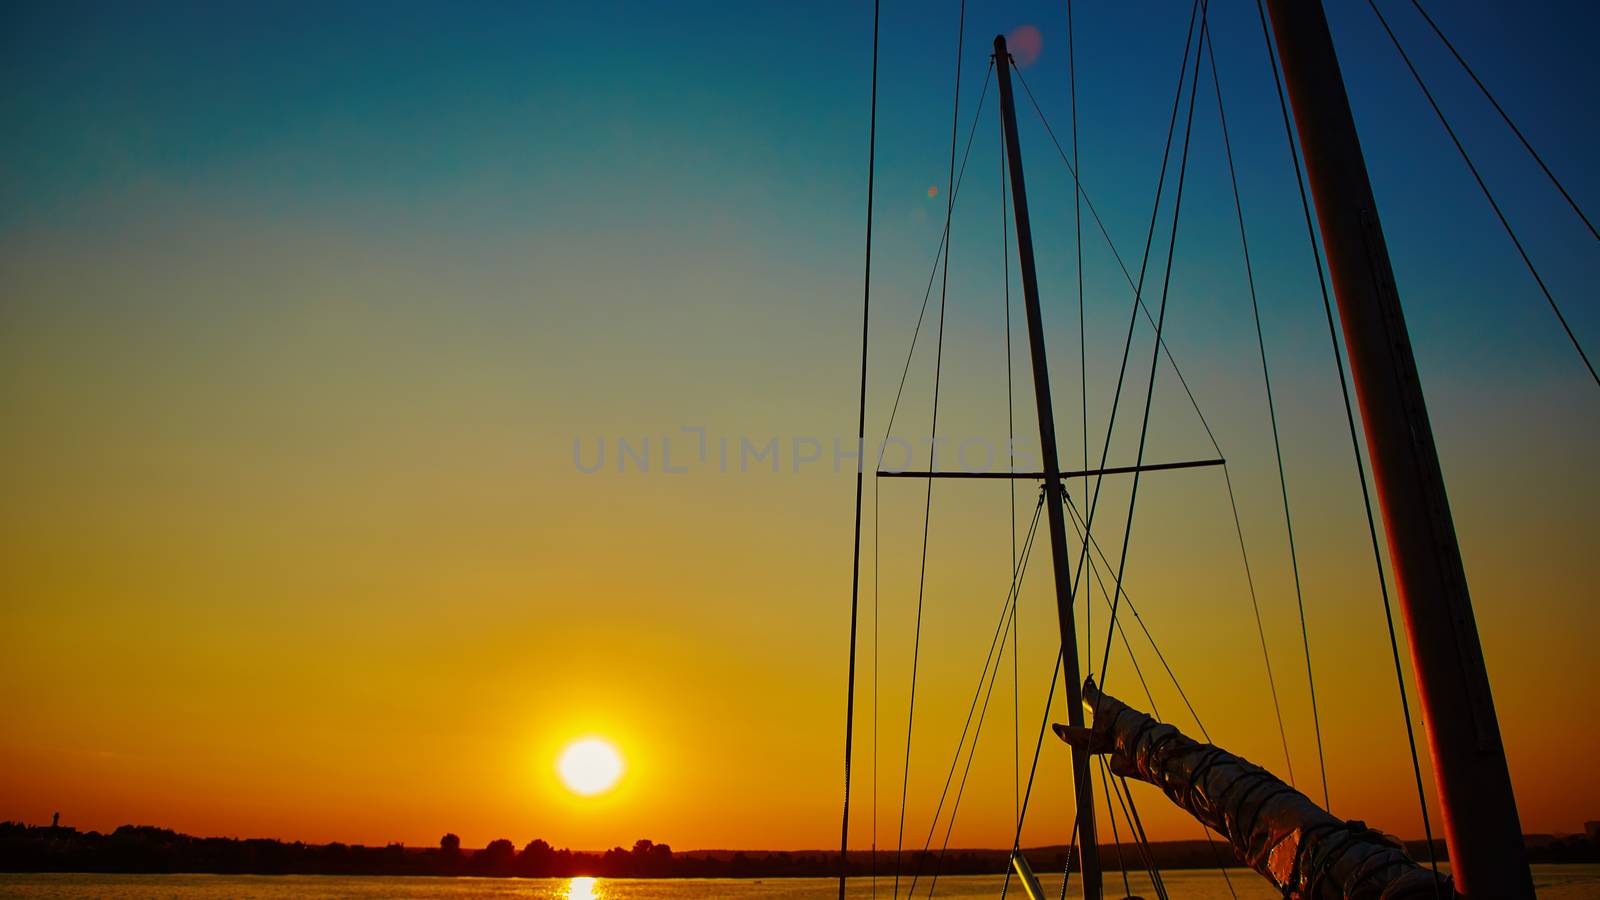 Sail boat gliding in sea at sunset by sarymsakov